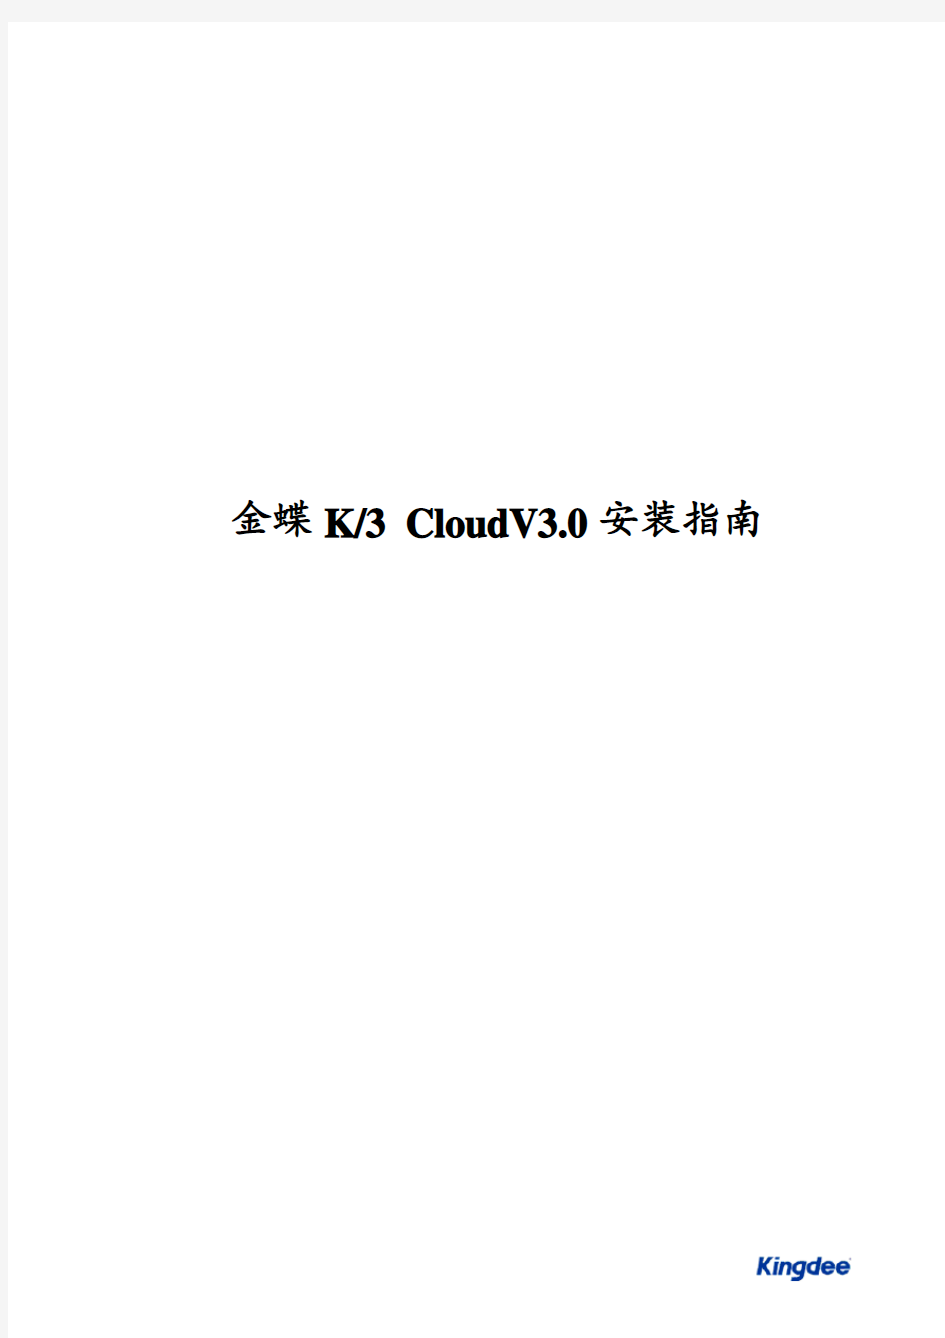 金蝶K3 Cloud V3.0产品安装指南